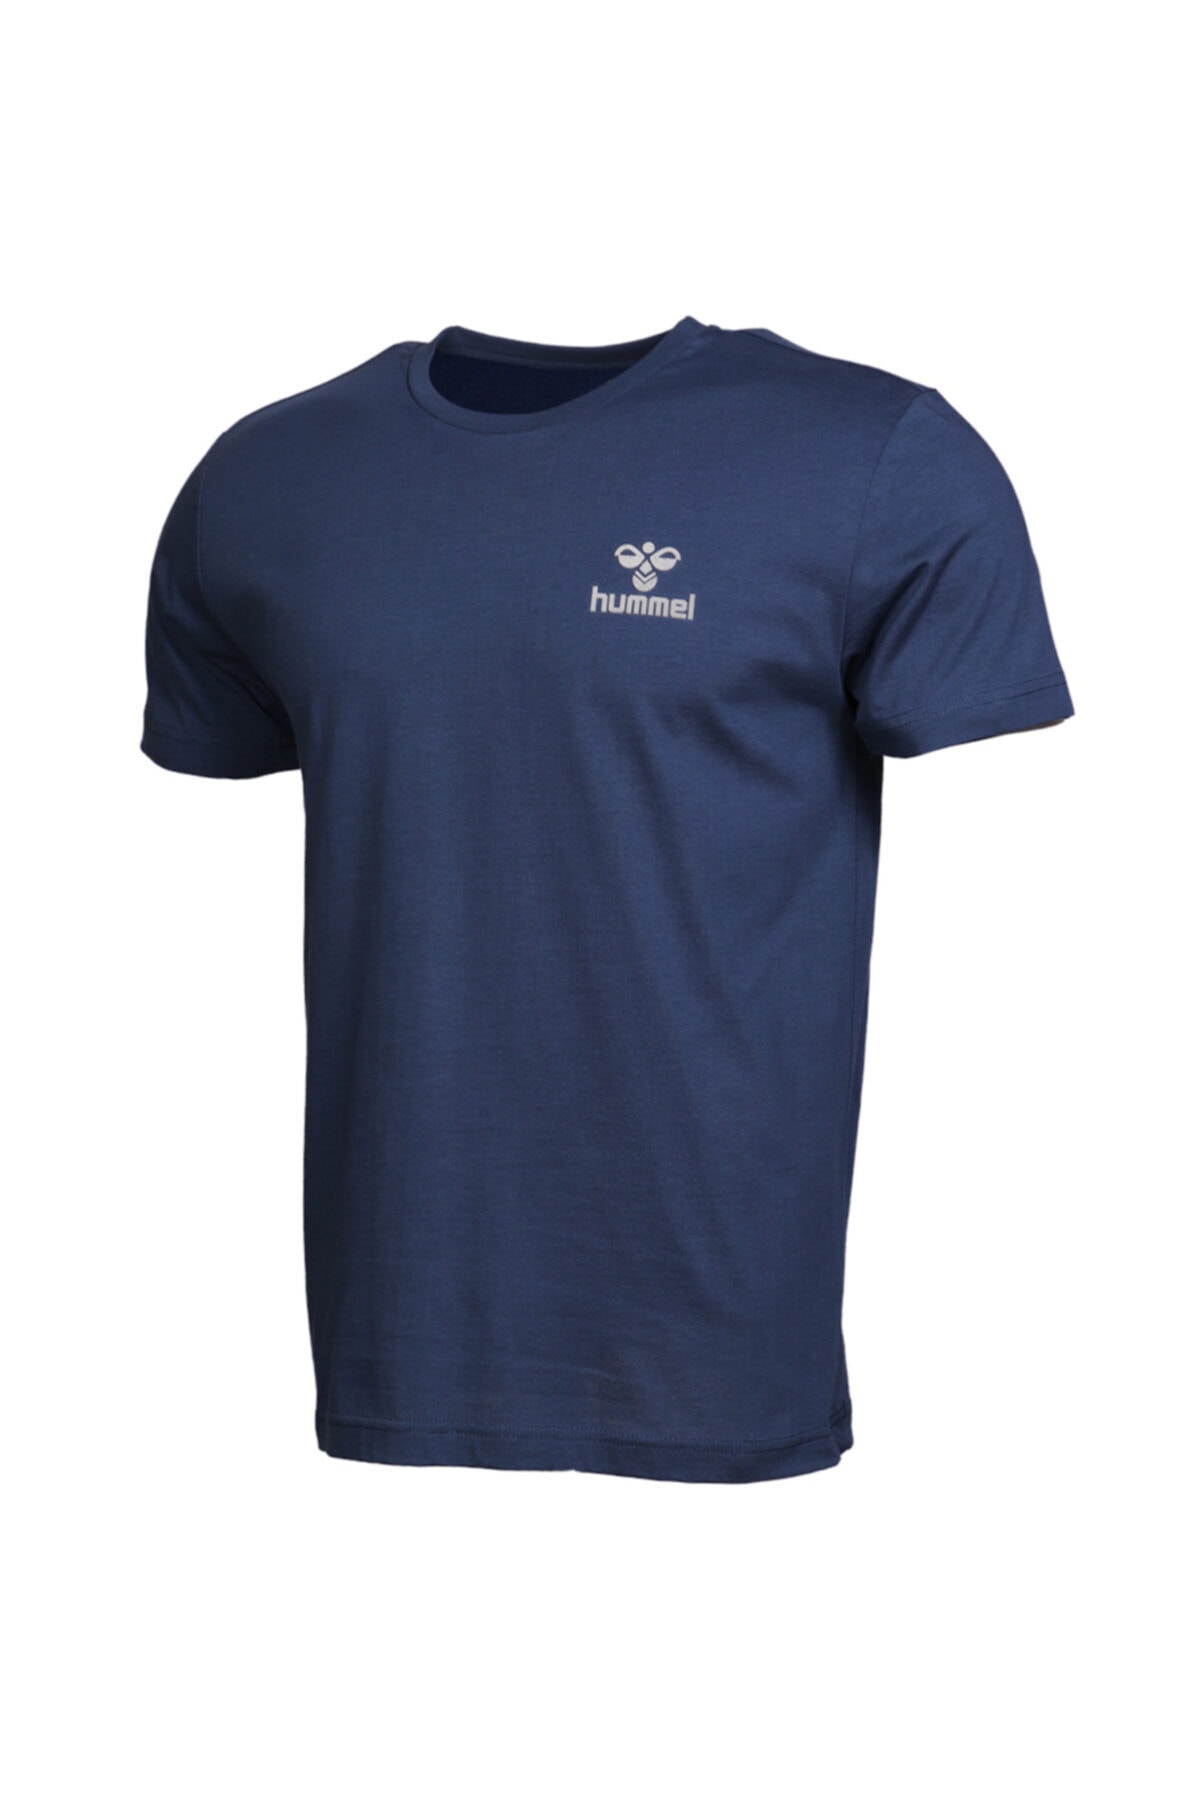 HUMMEL Keaton Mavi Kısa Kollu T-Shirt